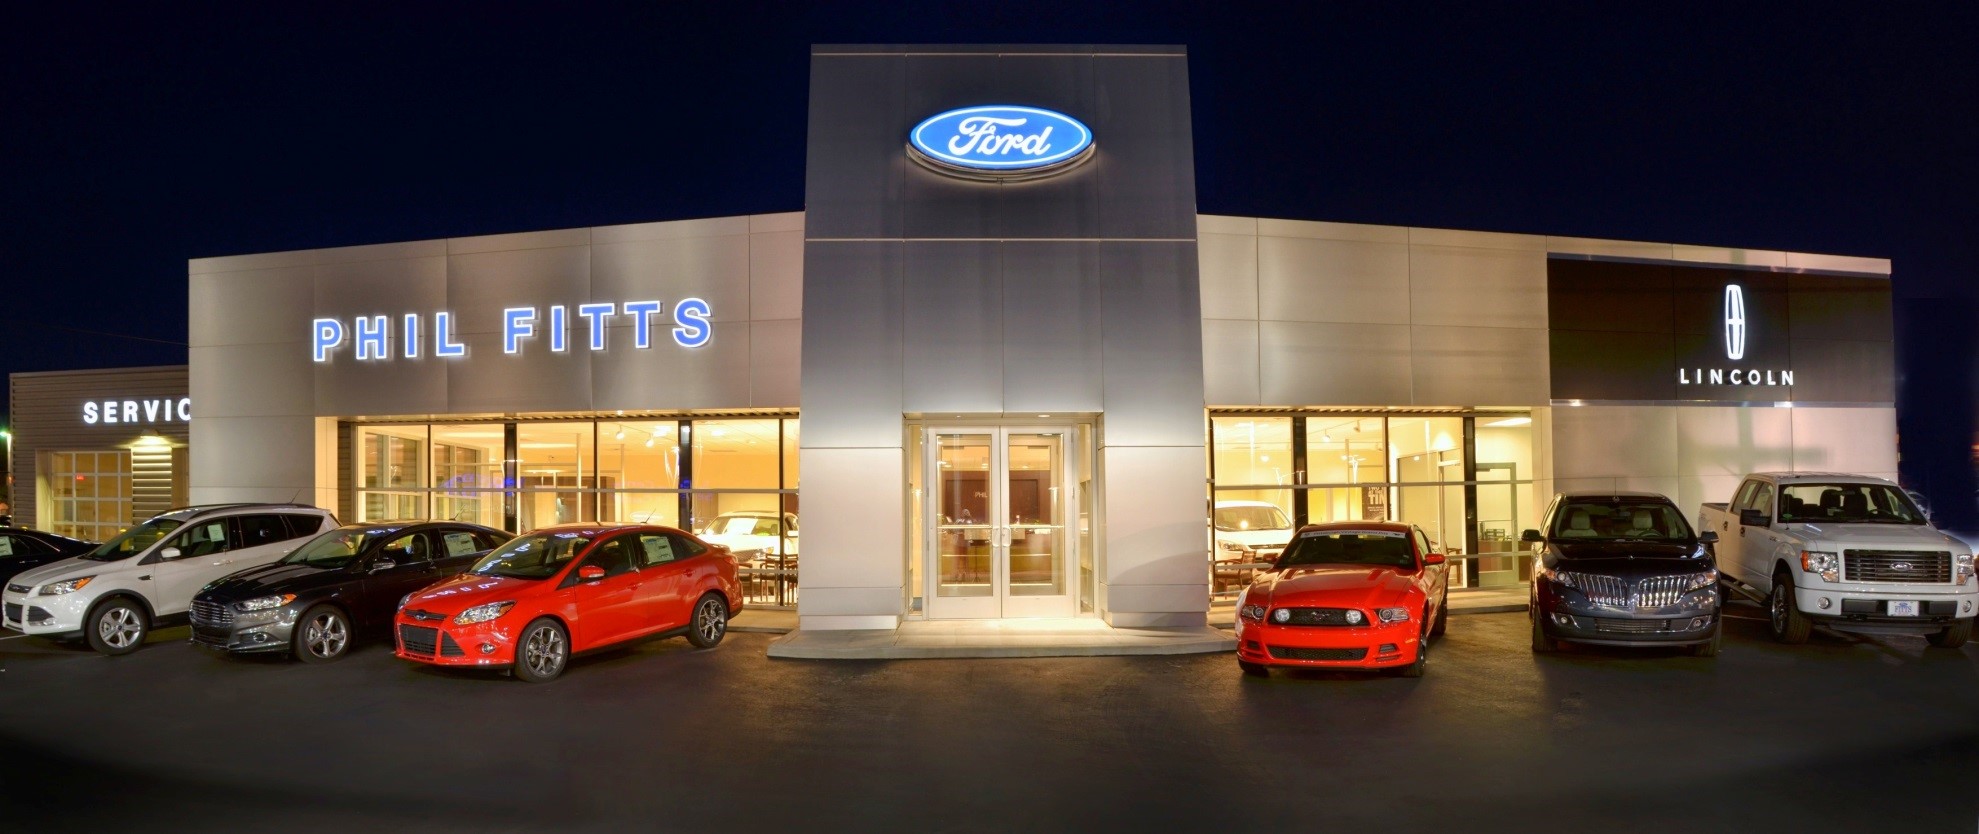 Ford Dealership Renovation